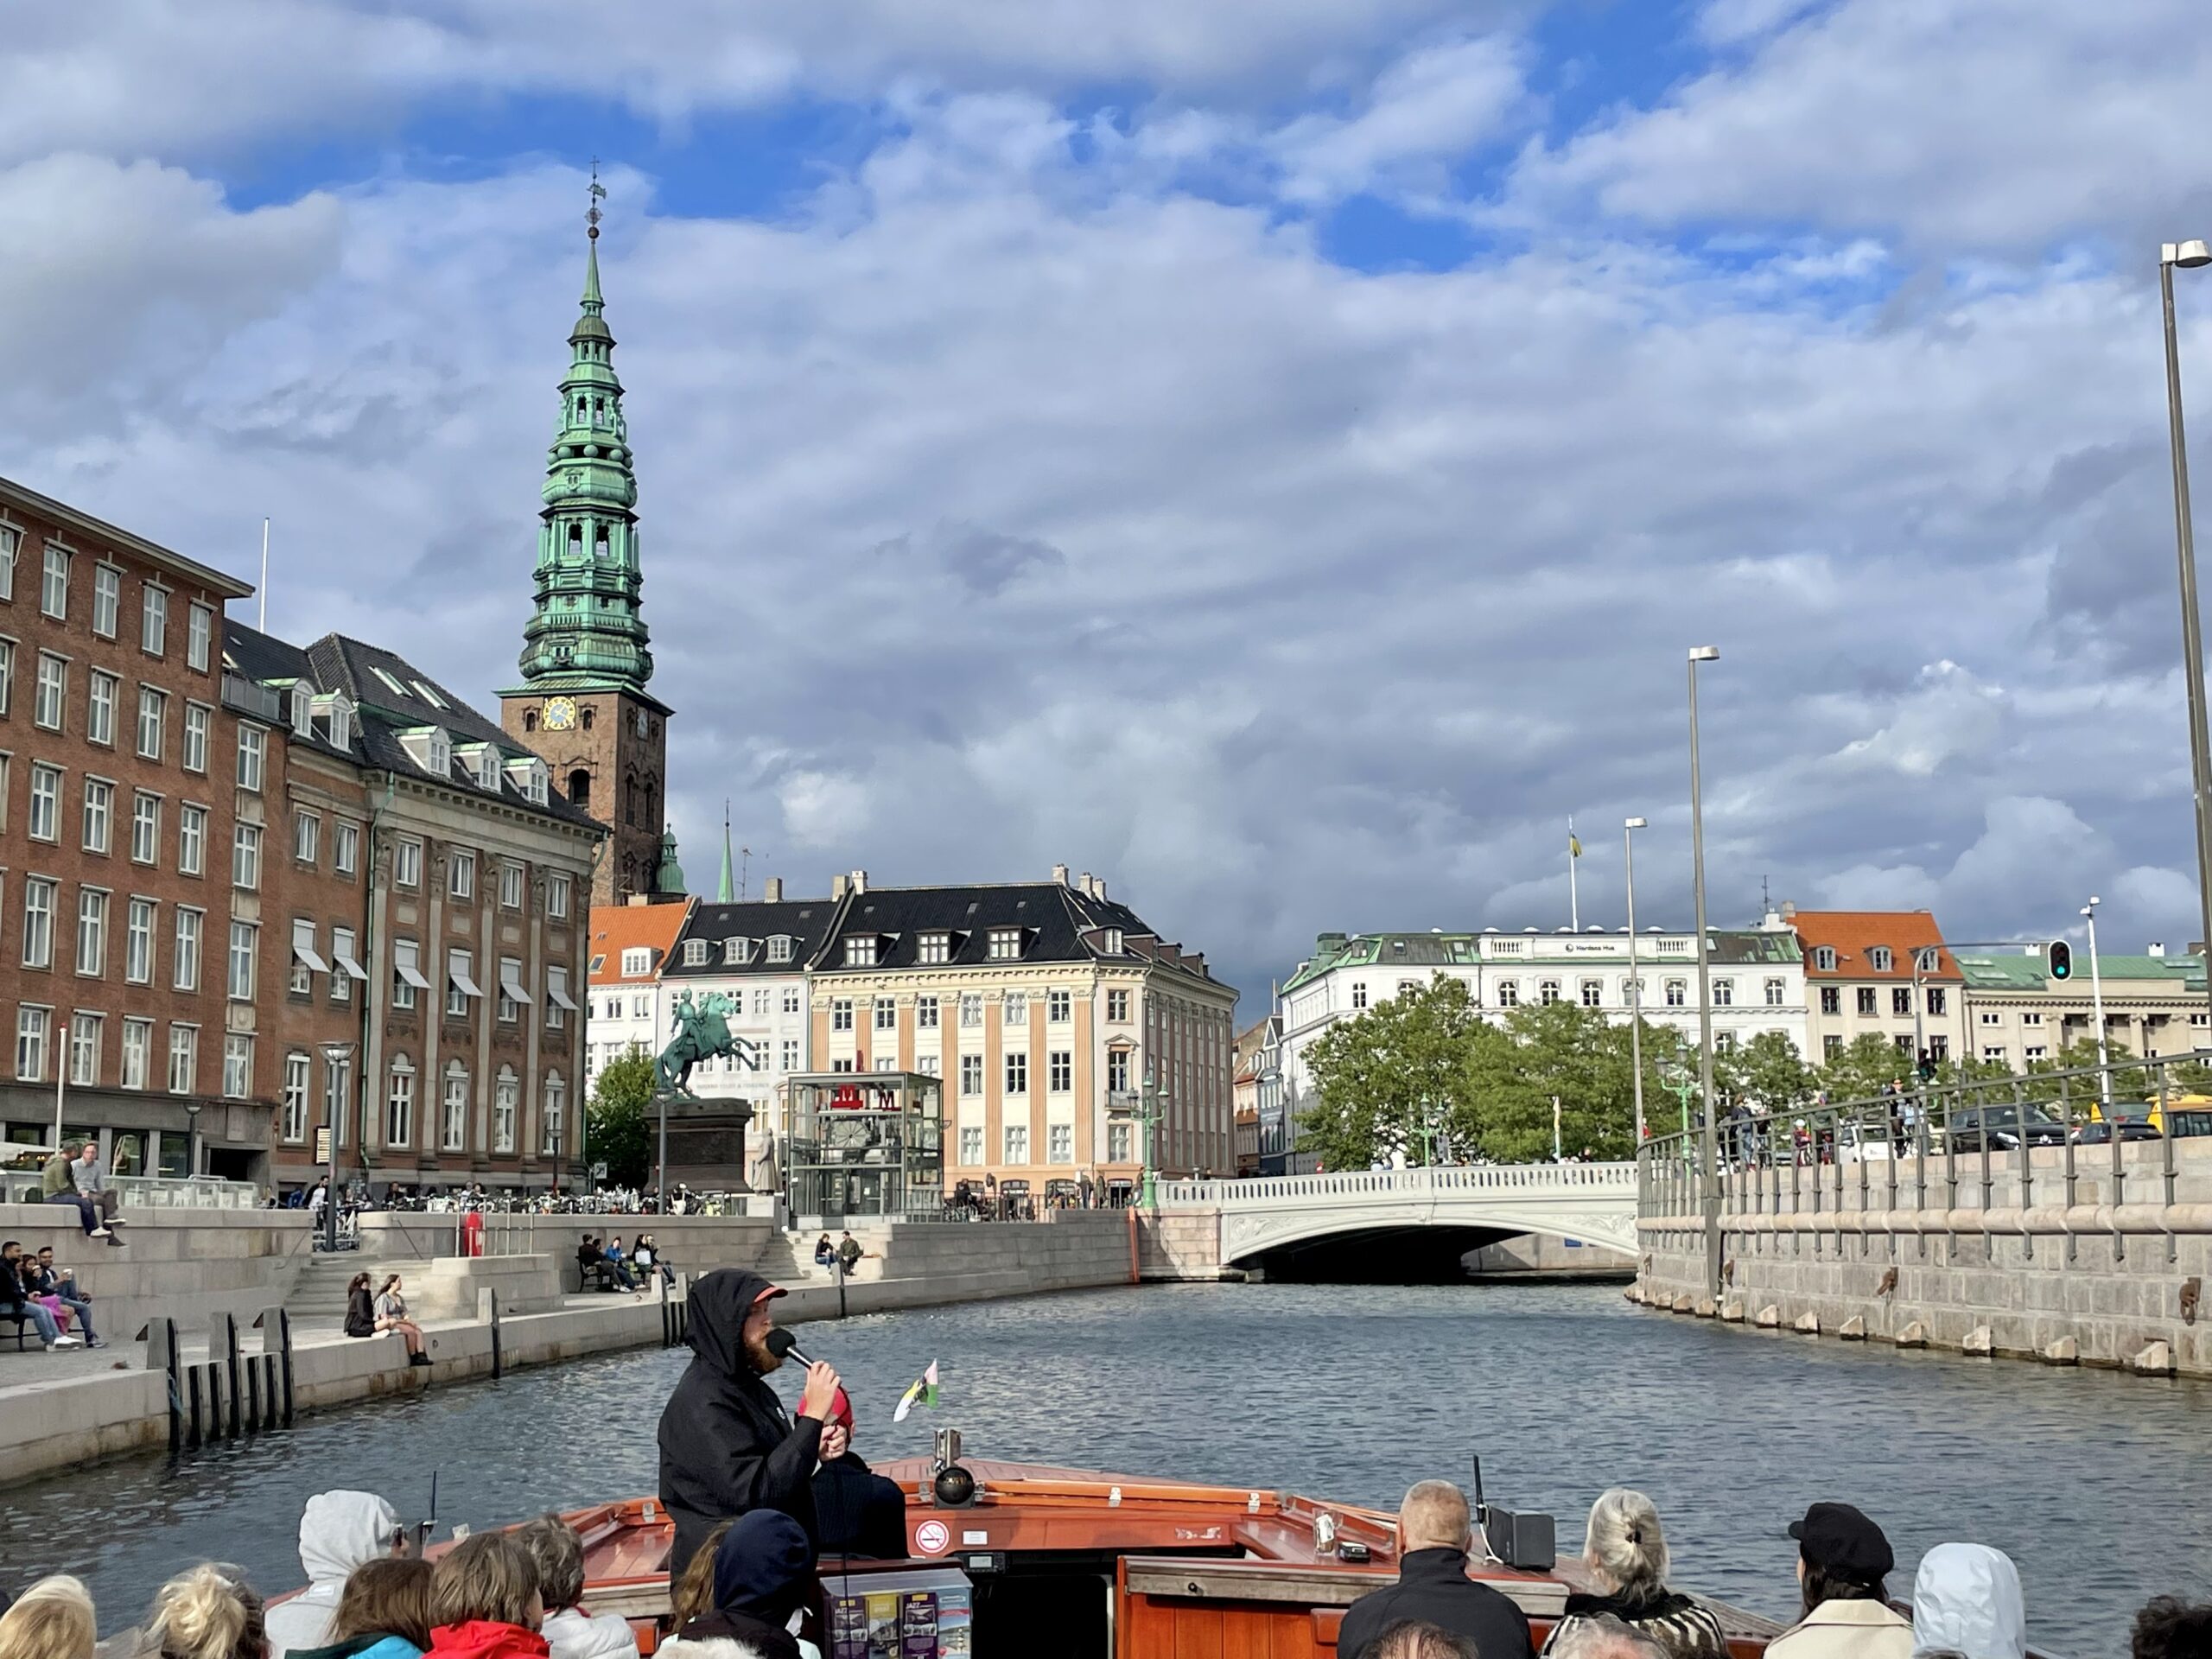 Rejs po kopenhaskich kanałach to dobry pomysł na początek zwiedzania miasta